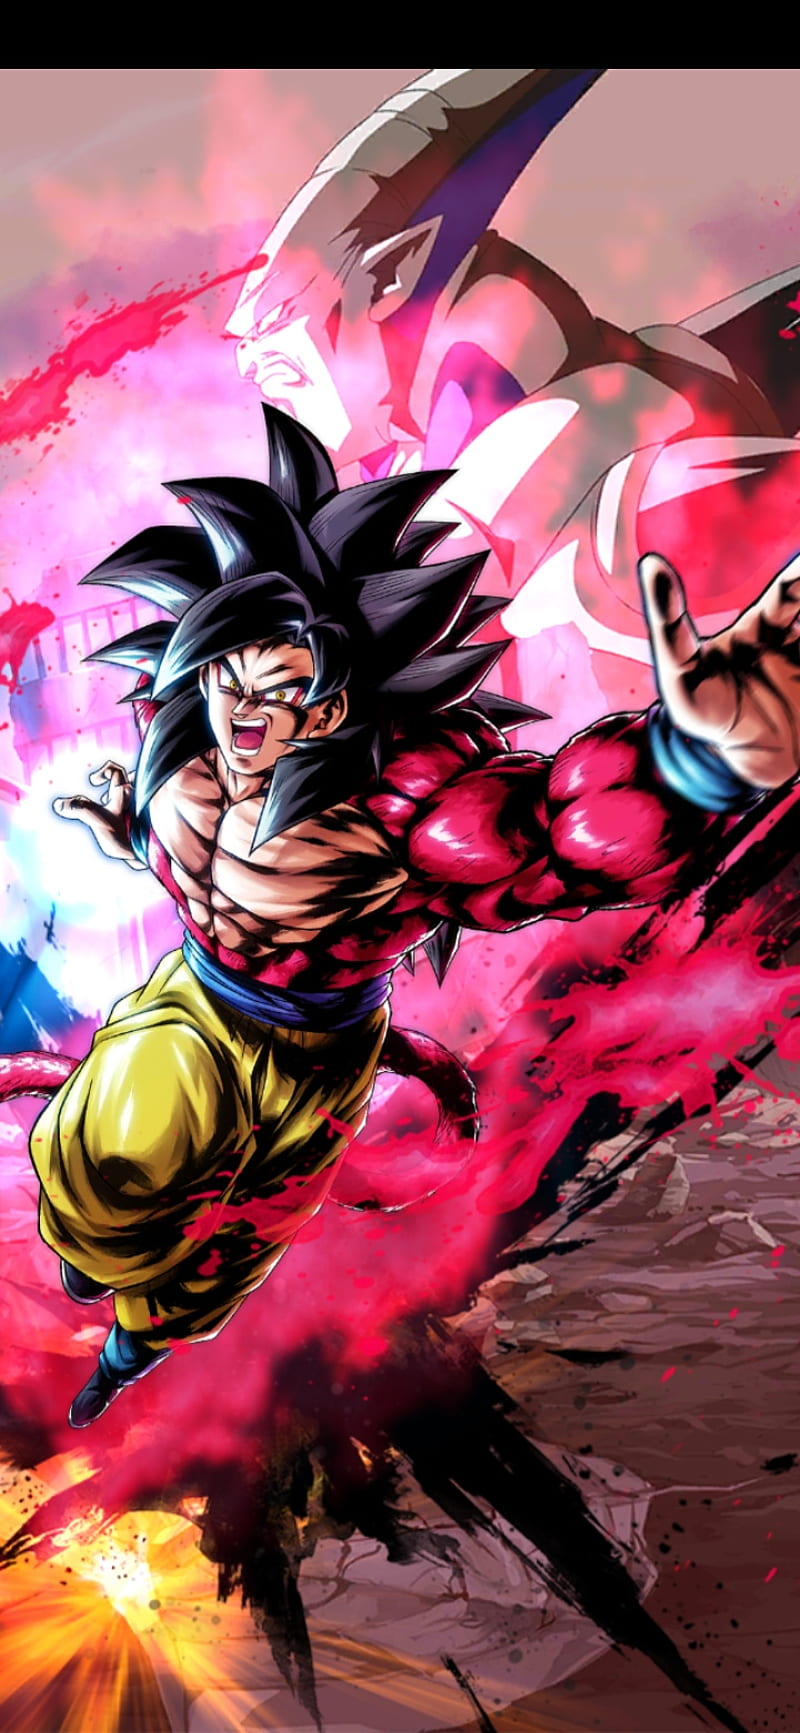 Super Saiyan 4 Goku Wallpapers  Top Free Super Saiyan 4 Goku Backgrounds   WallpaperAccess